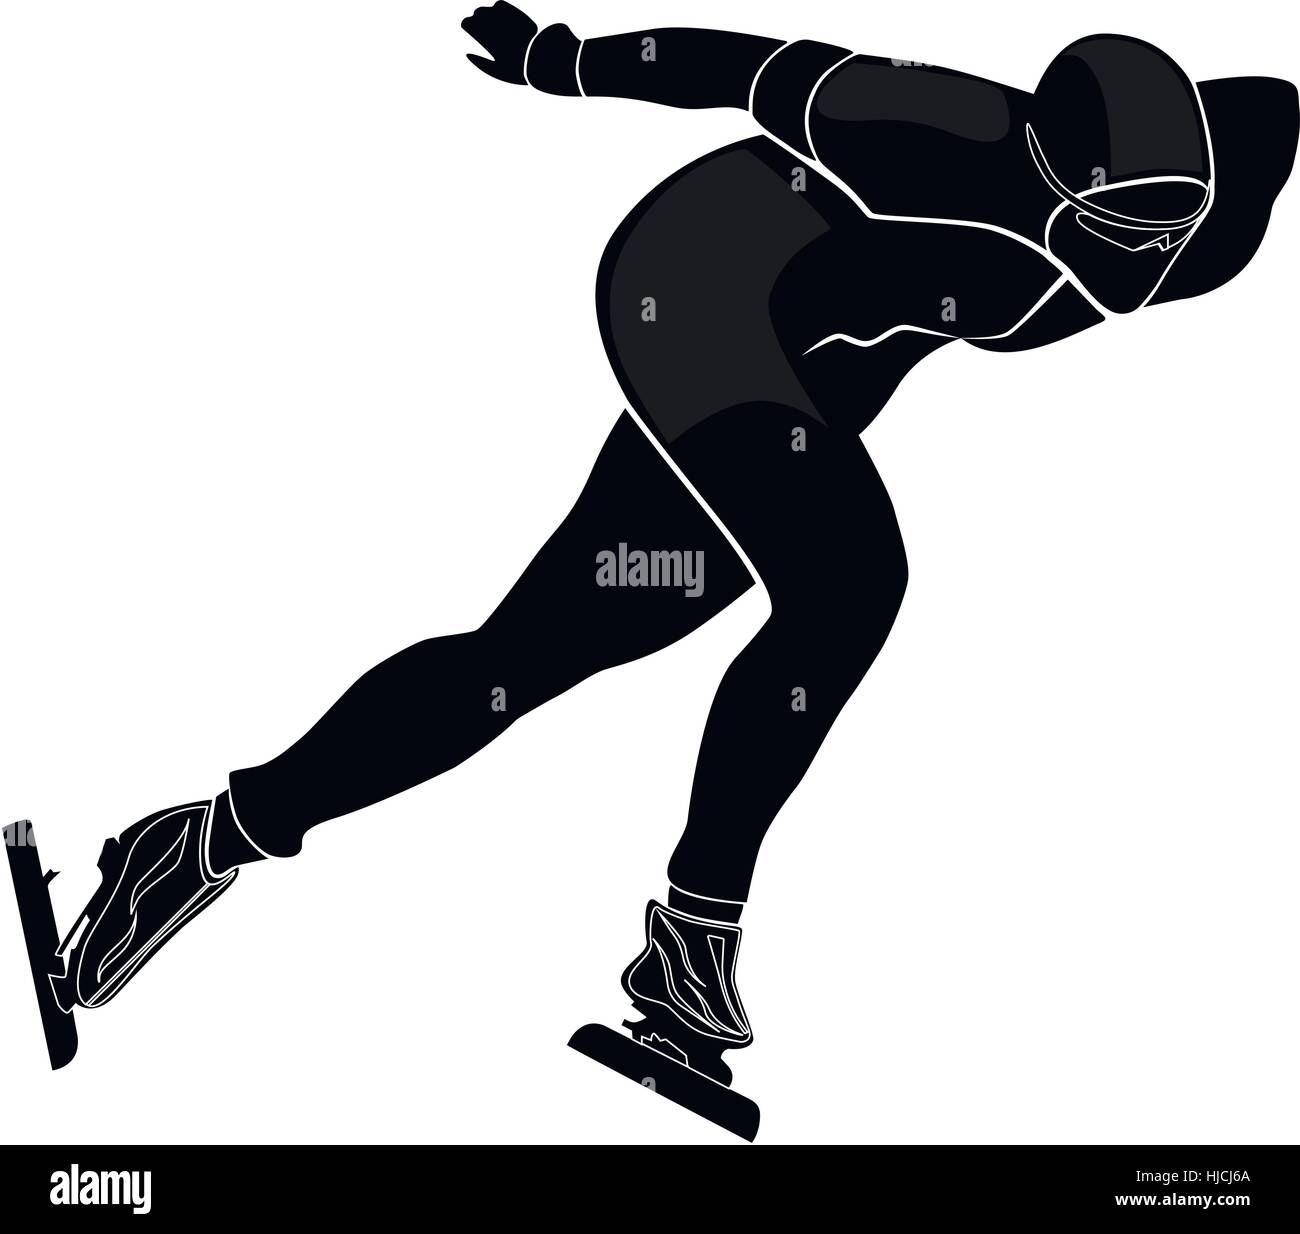 Athlète masculin de patinage de vitesse silhouette noire vector illustration Illustration de Vecteur